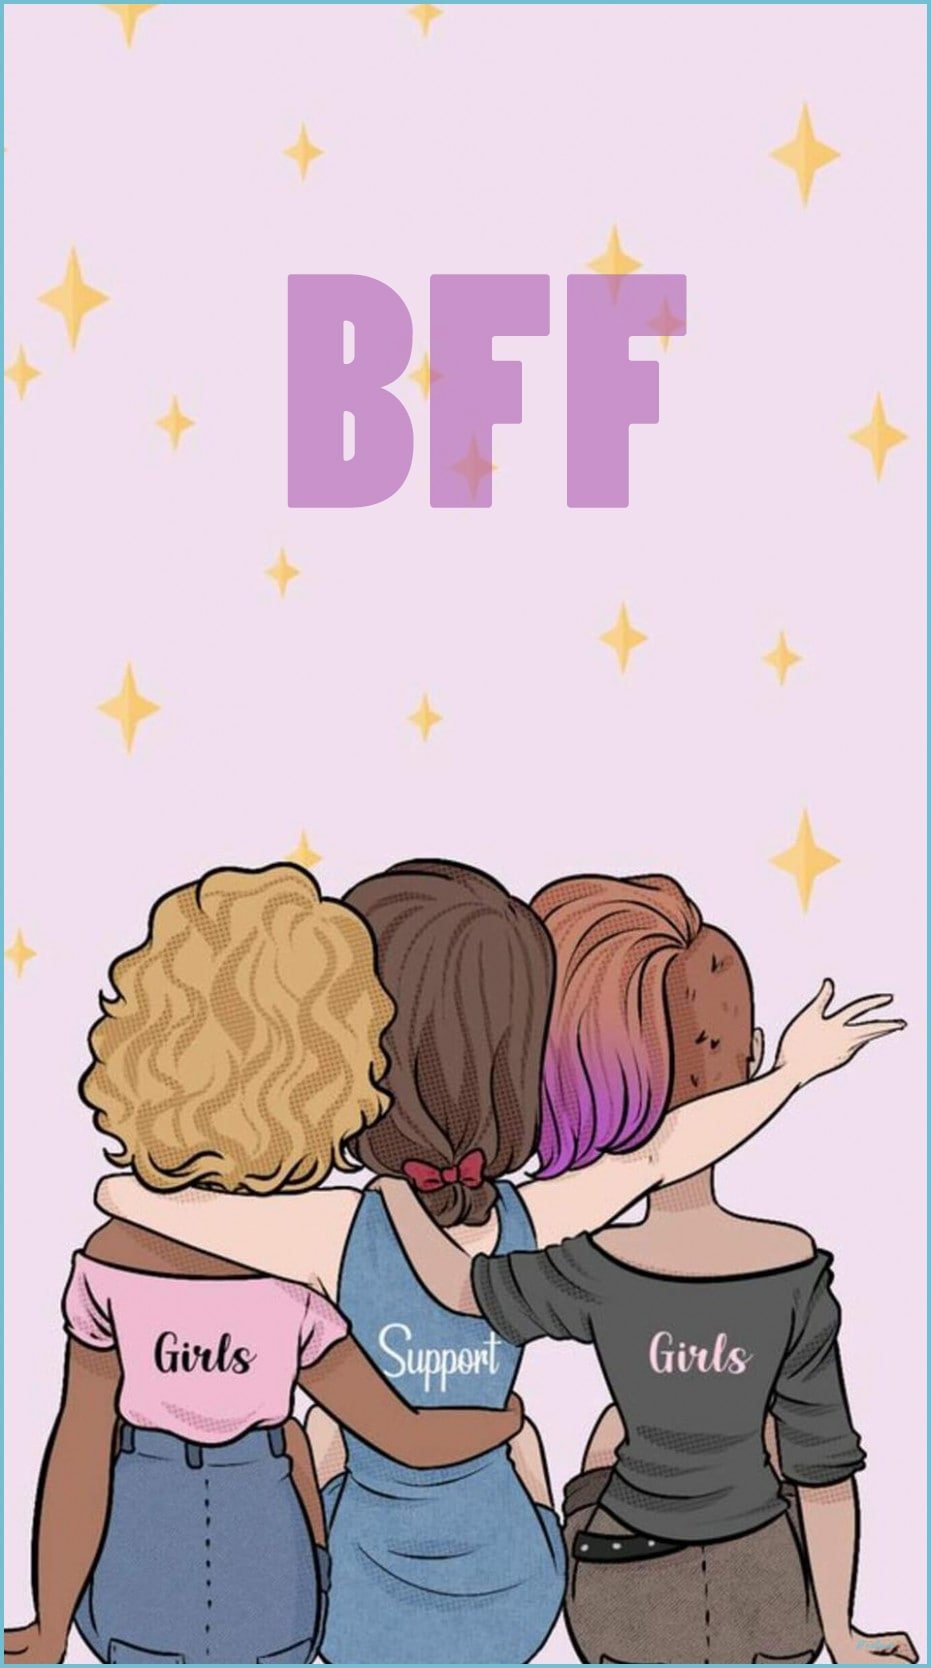 3 best friends - girls Wallpaper Download | MobCup